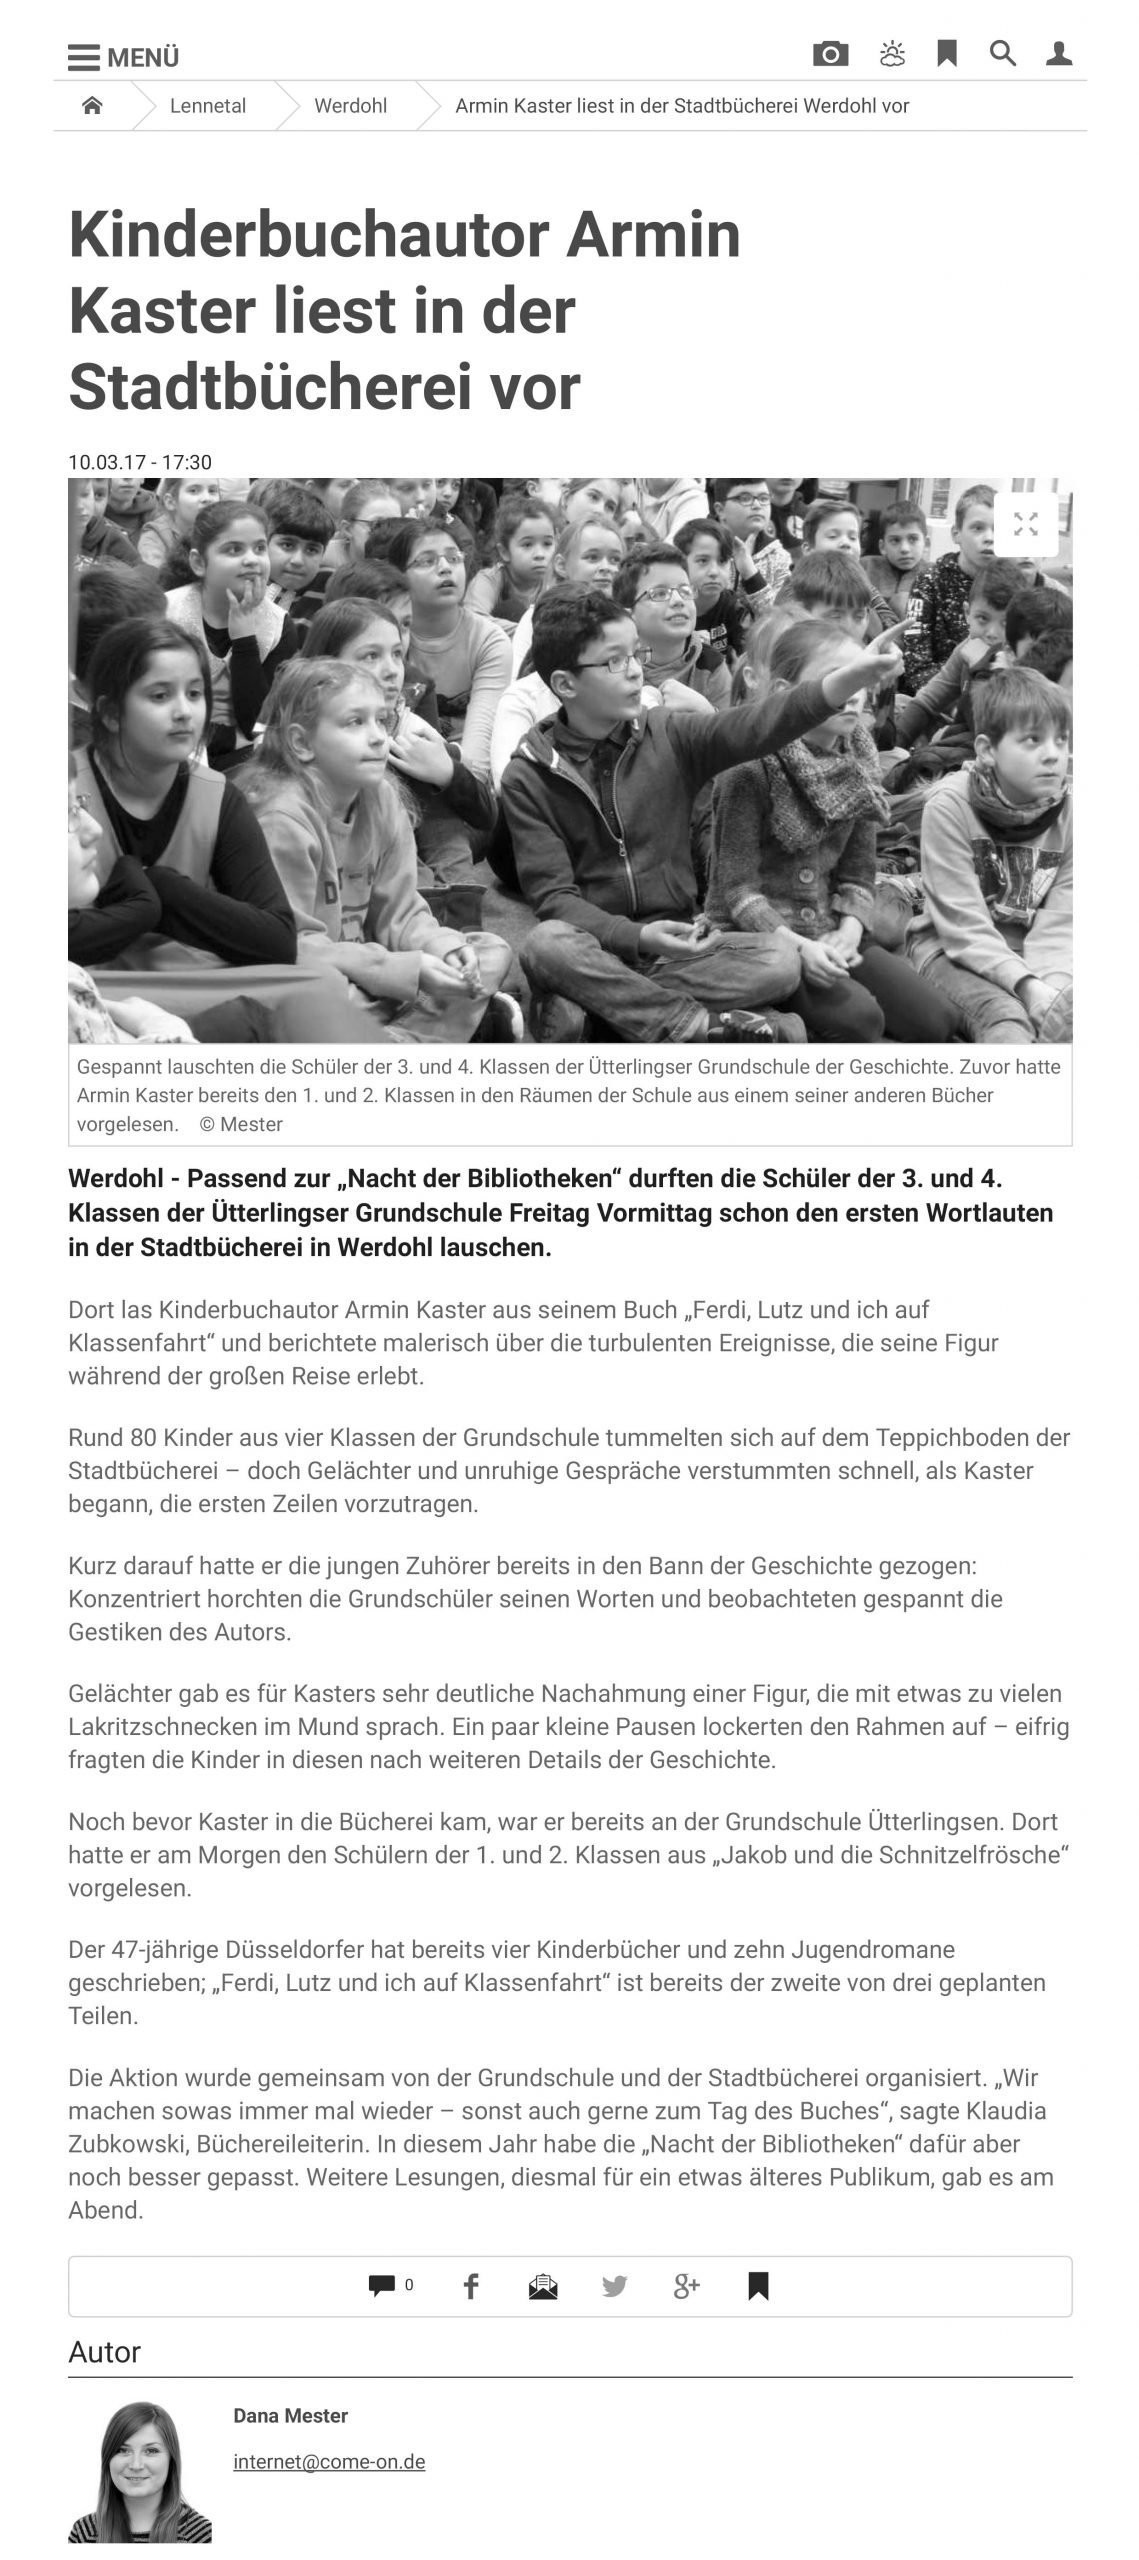 8. 10.03.17 Armin Kaster liest in der Stadtbücherei Werdohl vor _ Werdohl